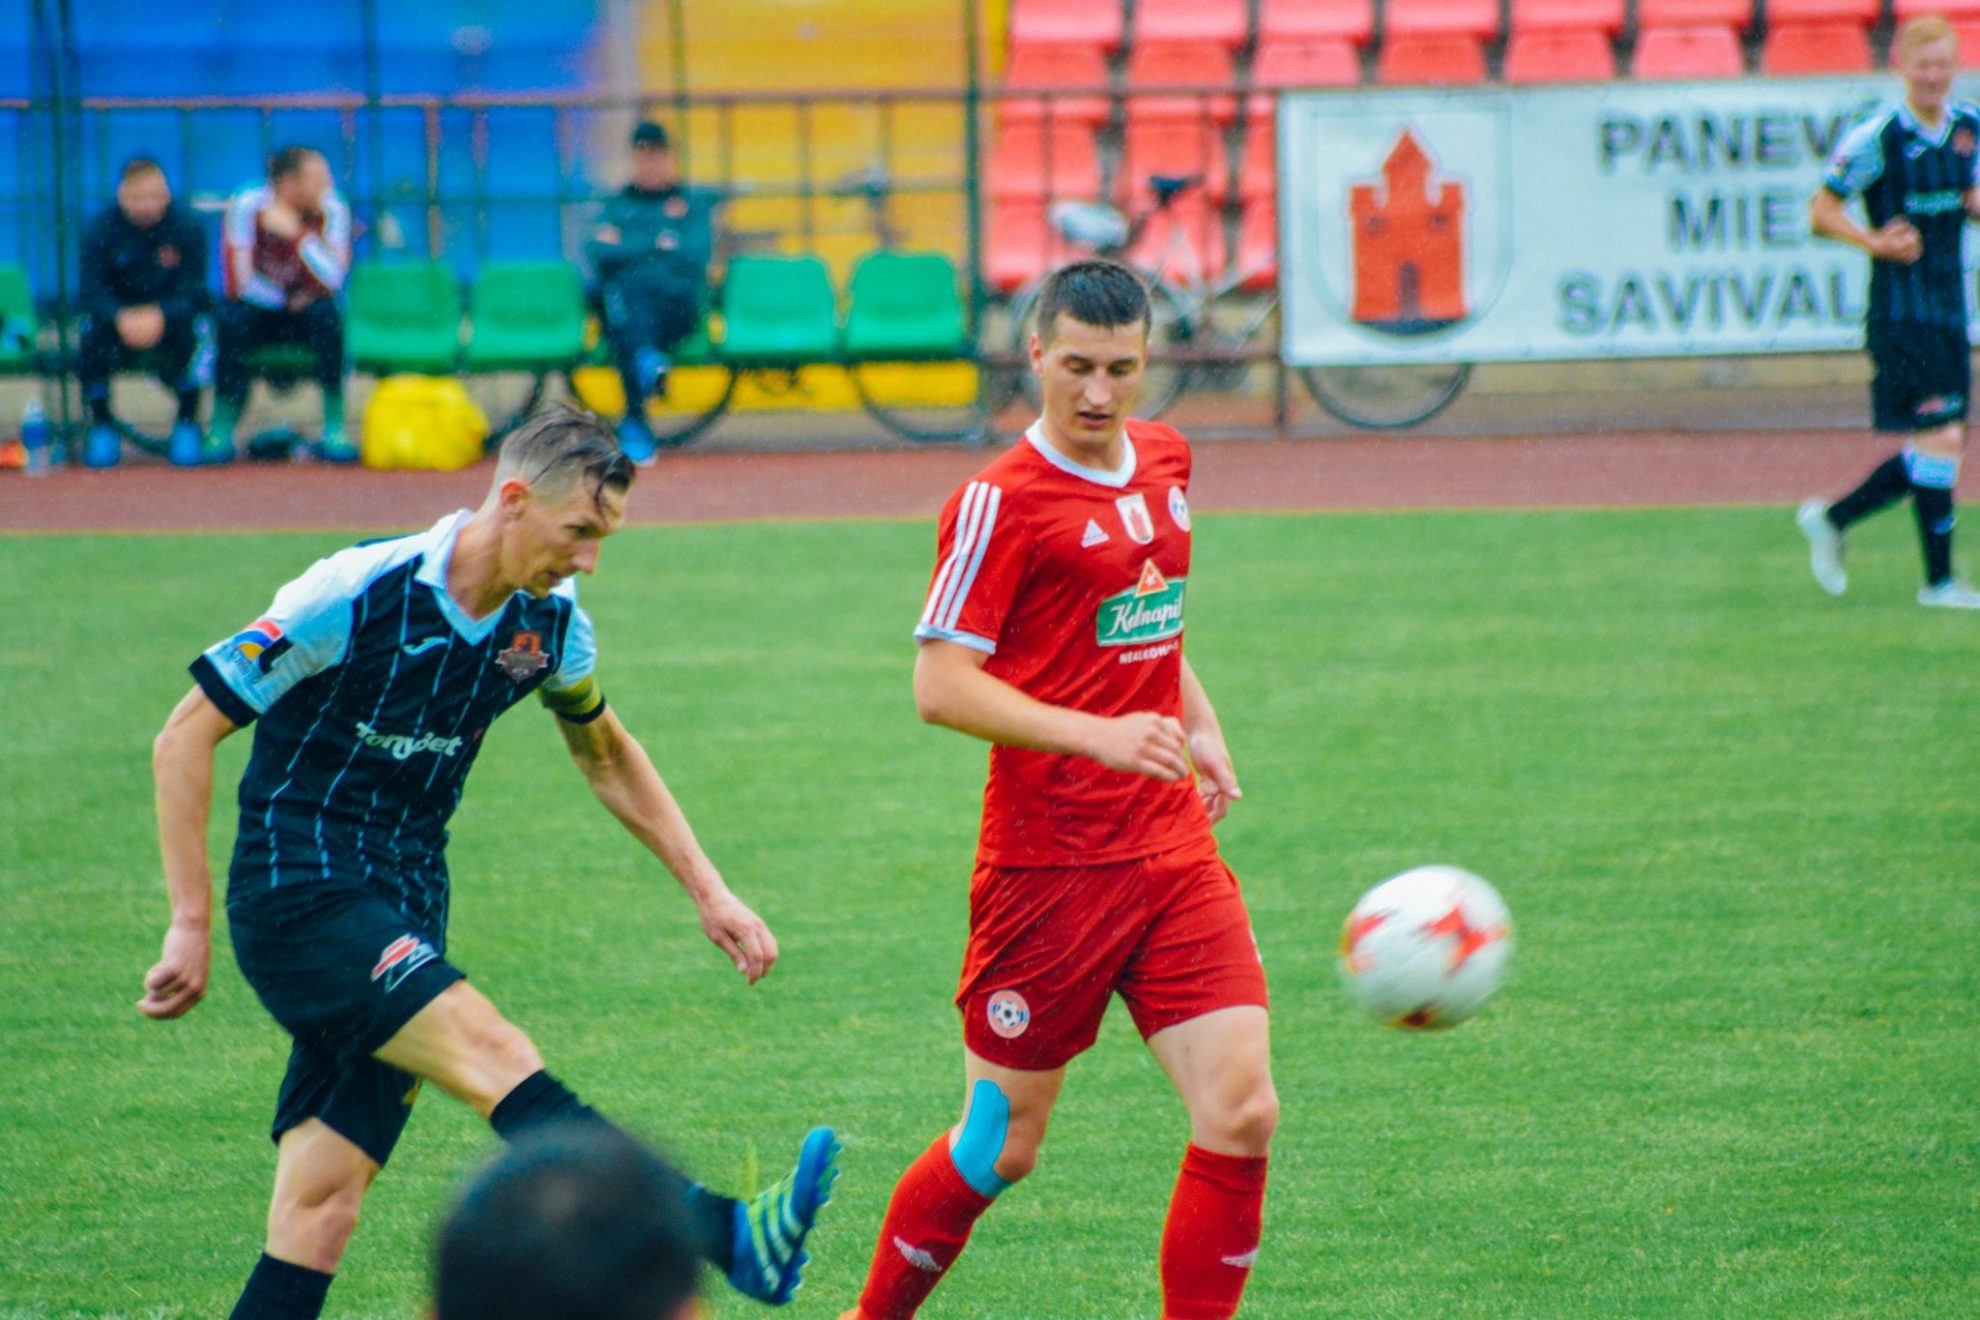 „Panevėžys“ LFF taurėje namuose tiksint paskutinėms rungtynių minutėms įveikė Telšių „Džiugą“ 2:1 (1:0) ir iškovojo kelialapį į taurės ketvirtfinalį.